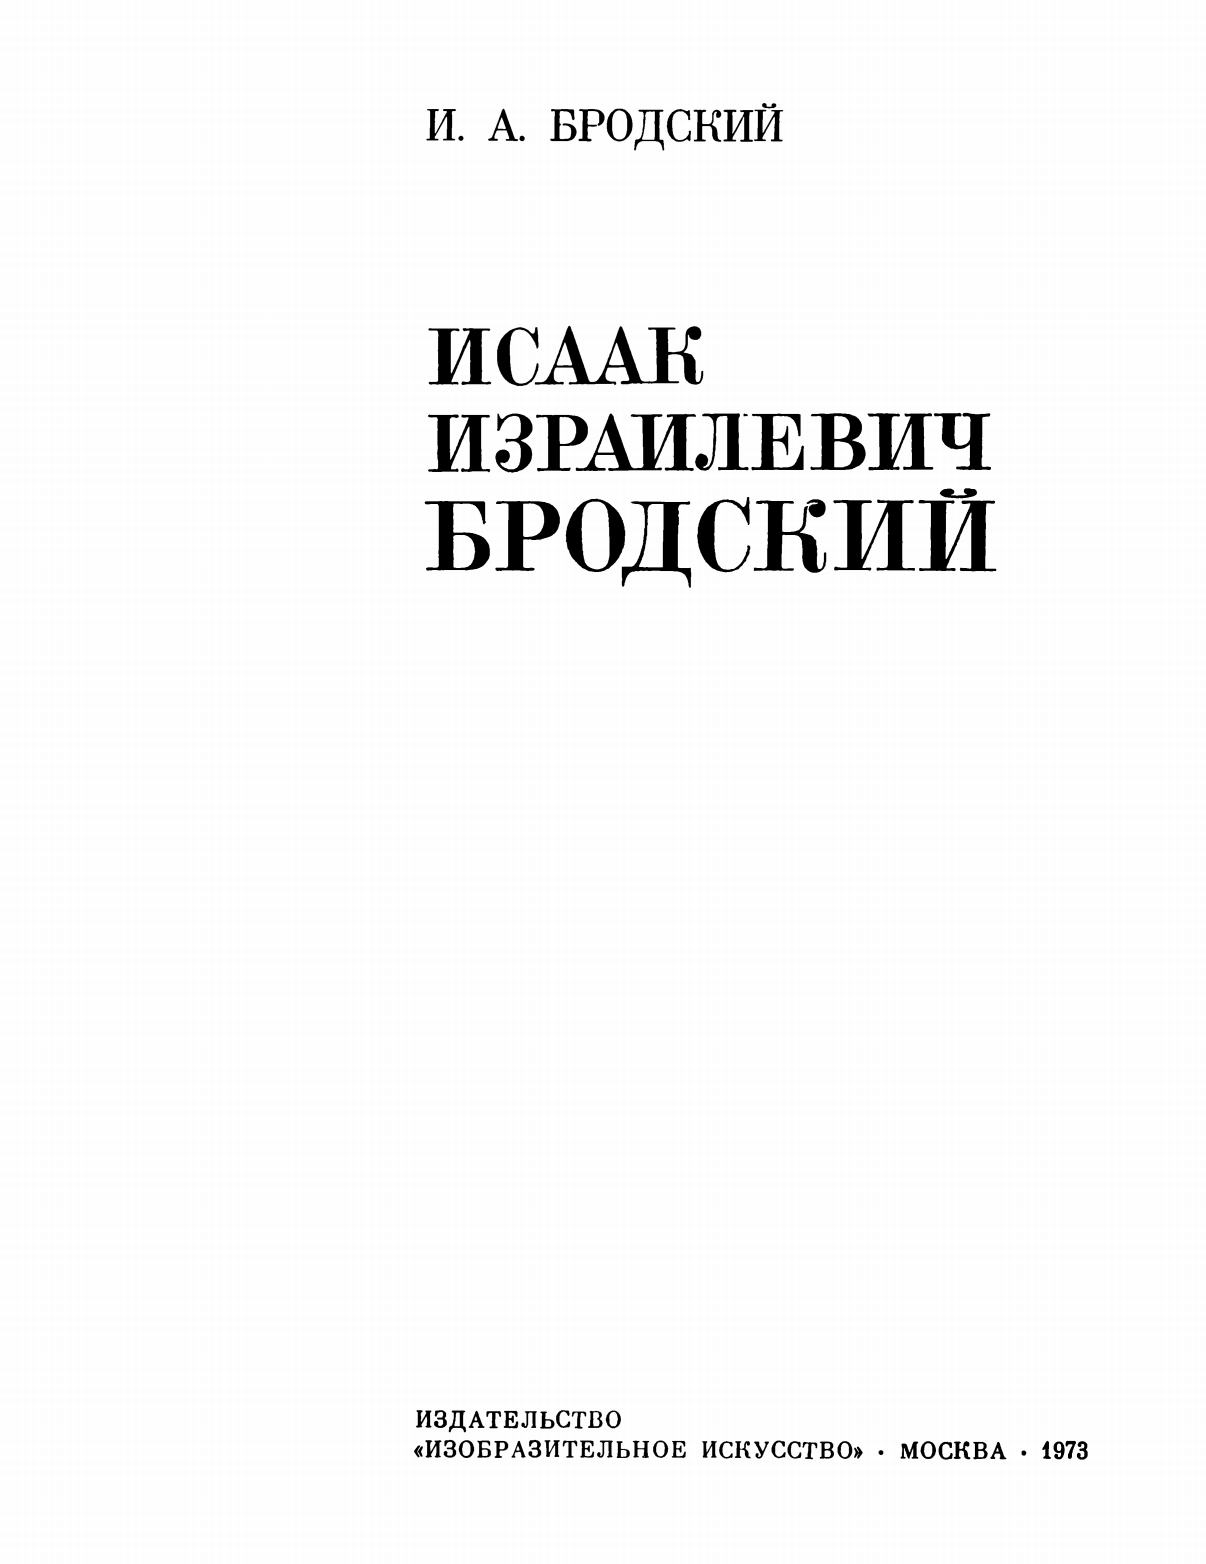 Исаак Израилевич Бродский / Иосиф Анатольевич Бродский. — Москва : Изобразительное искусство, 1973